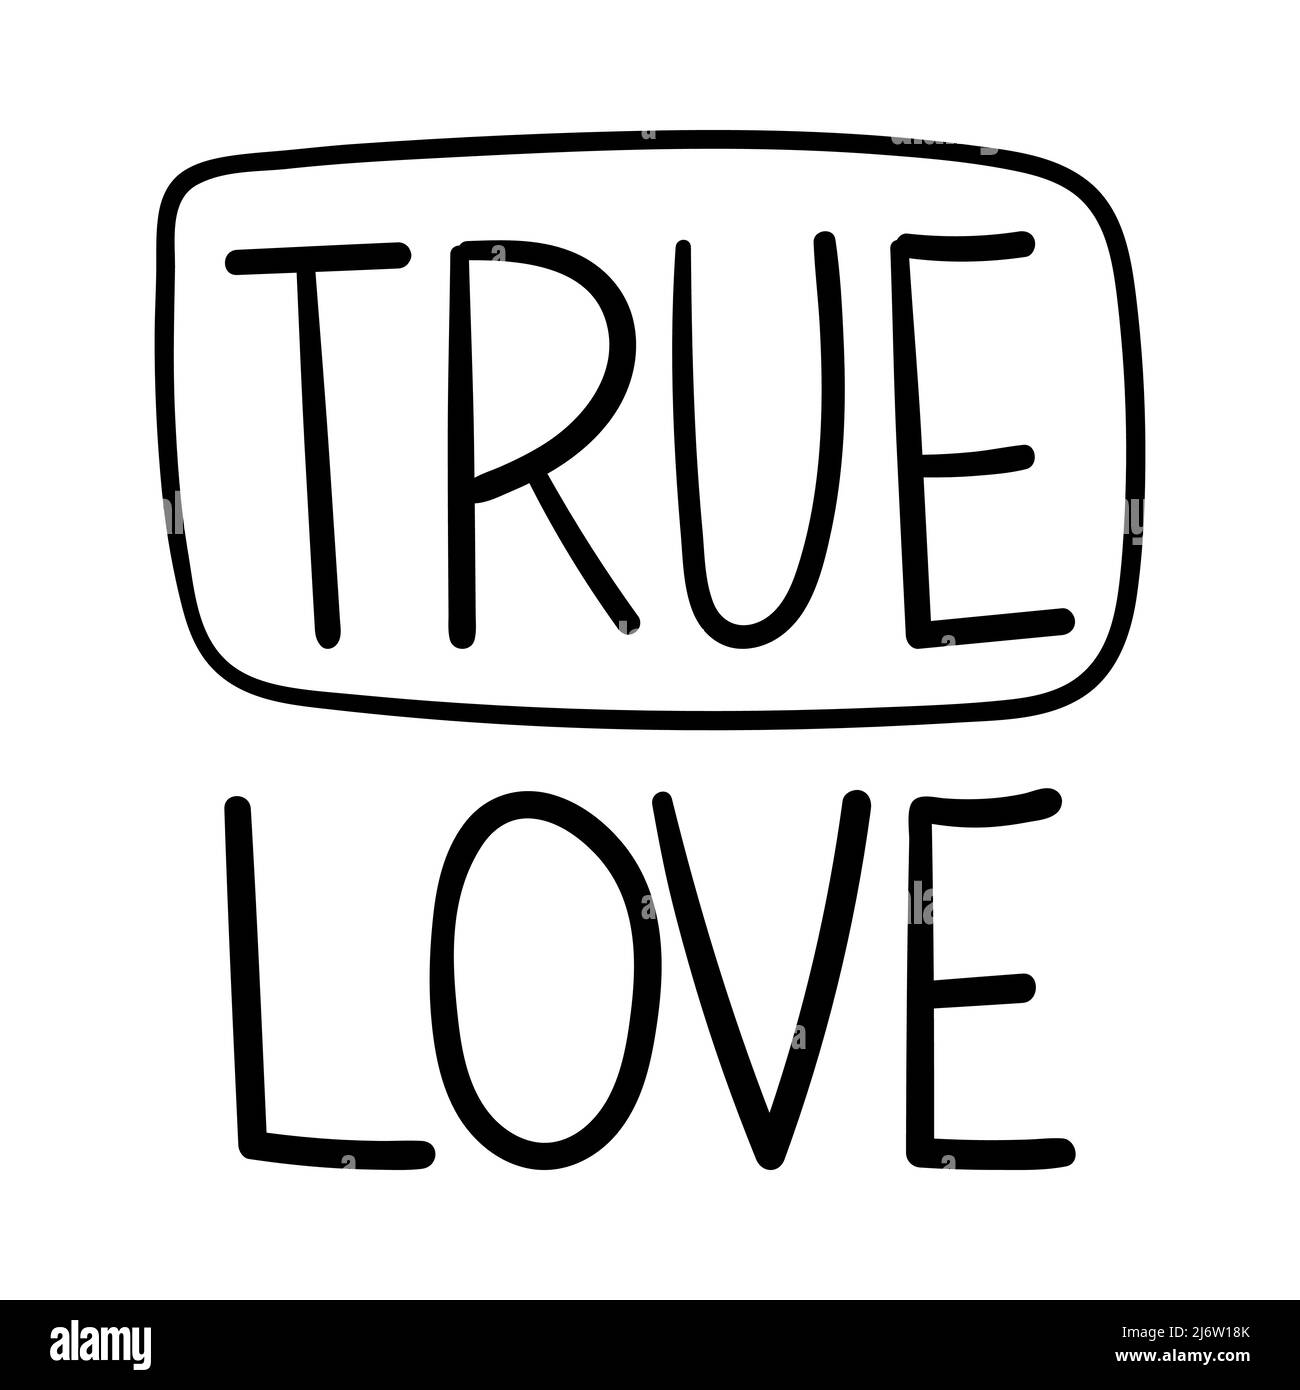 True Love Vector Art & Graphics